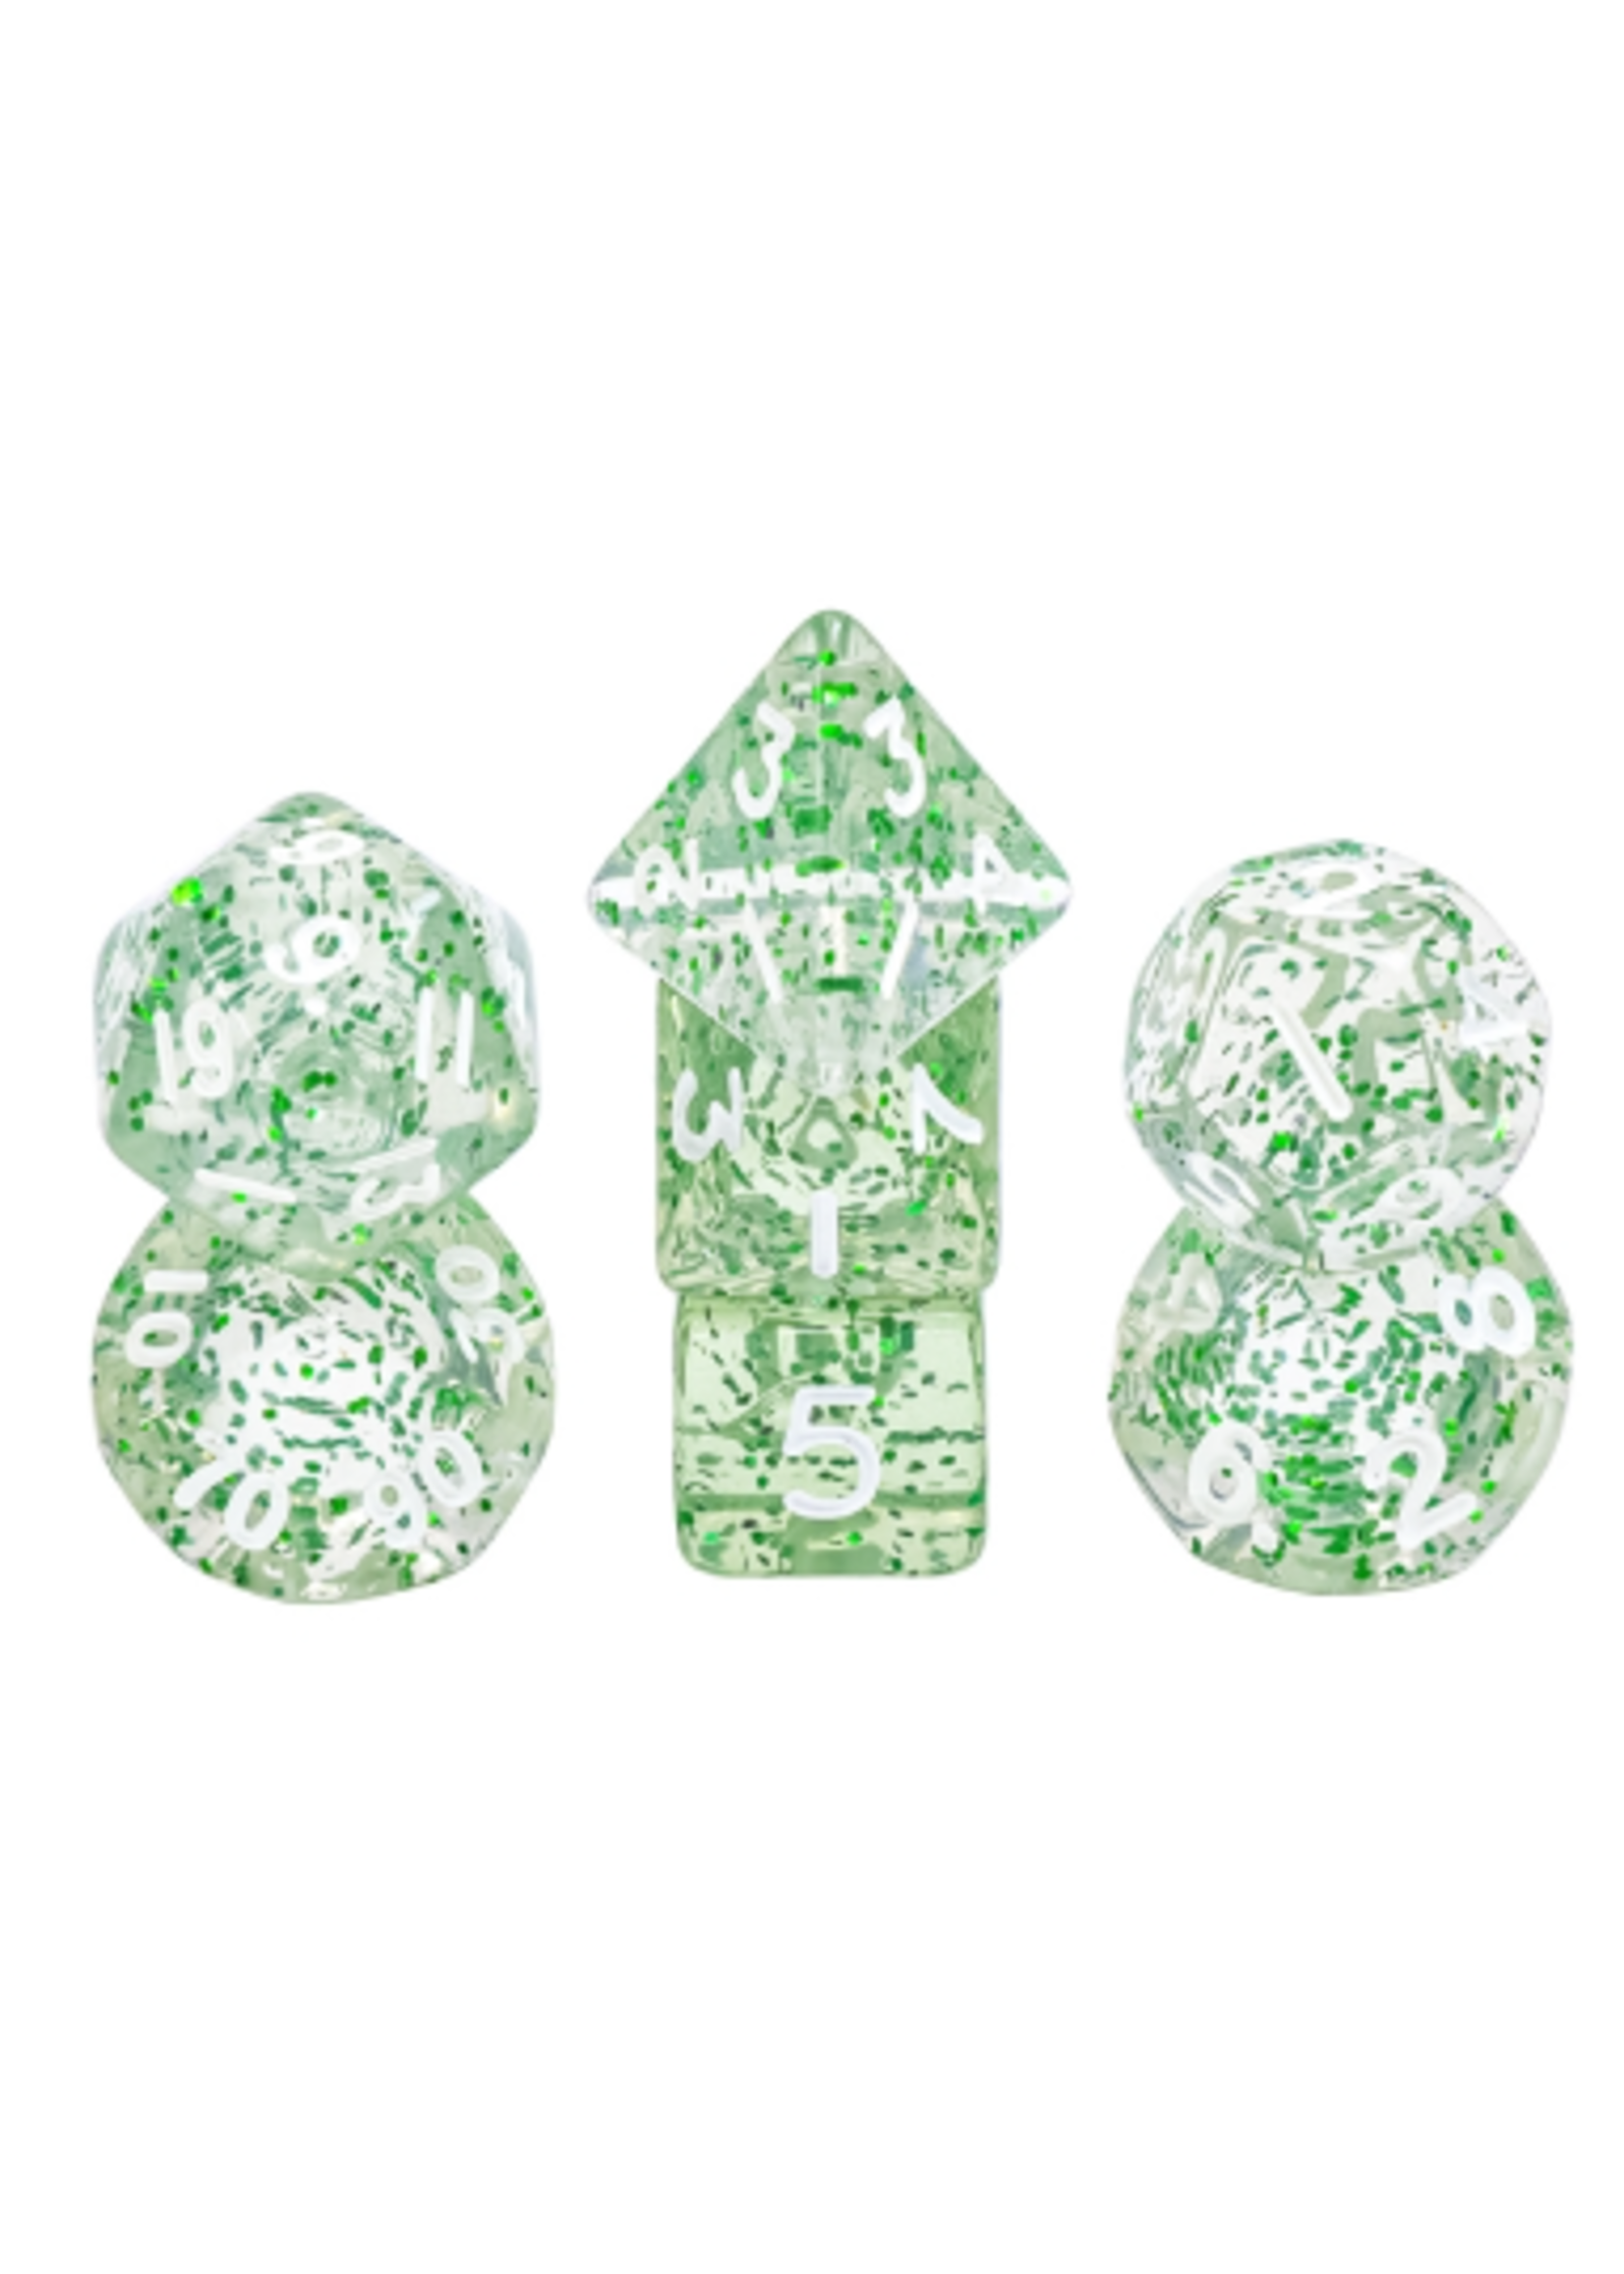 7 Set MINI Polyhedral Dice - Green Glitter